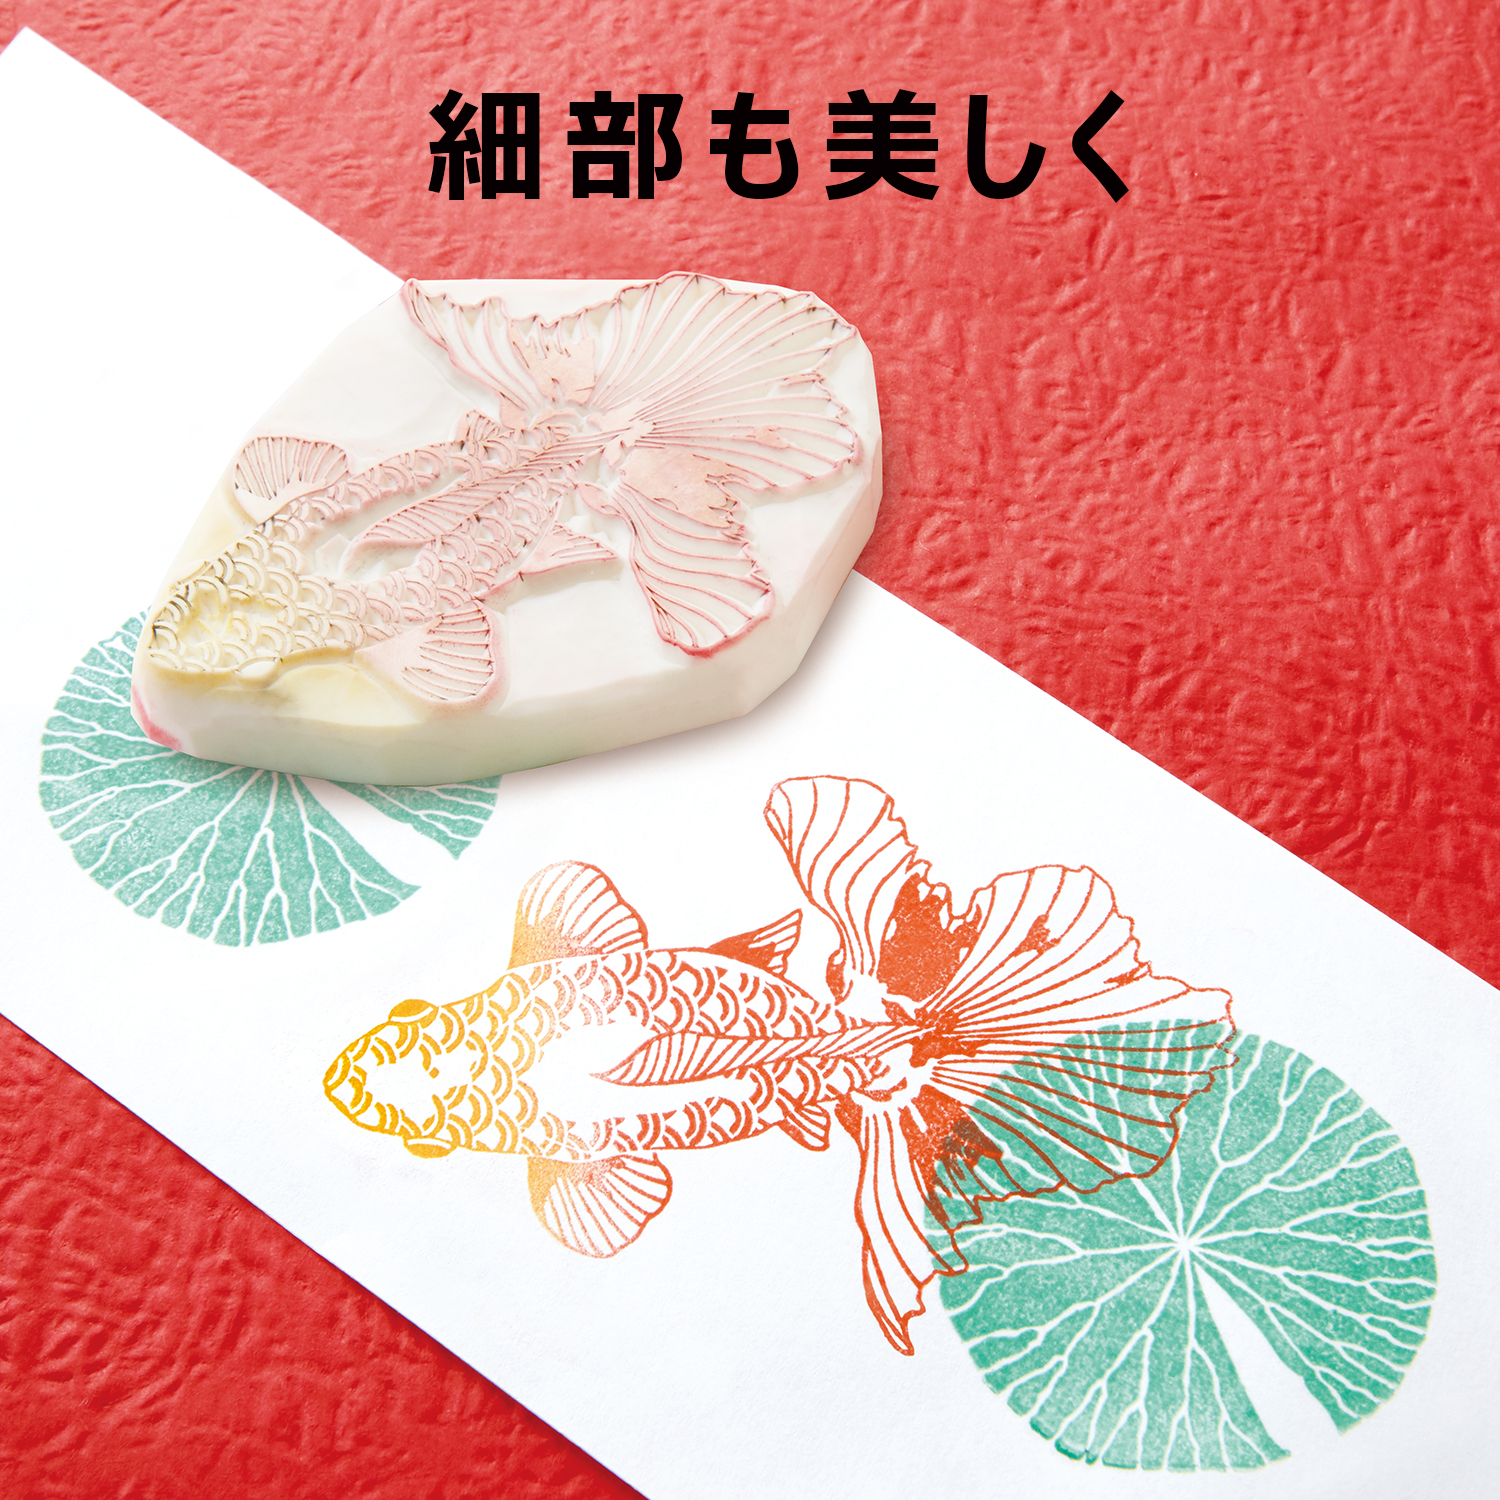 いろもよう 珊瑚色(さんごいろ)|HAC-1-OR|商品カタログ|シヤチハタ株式会社